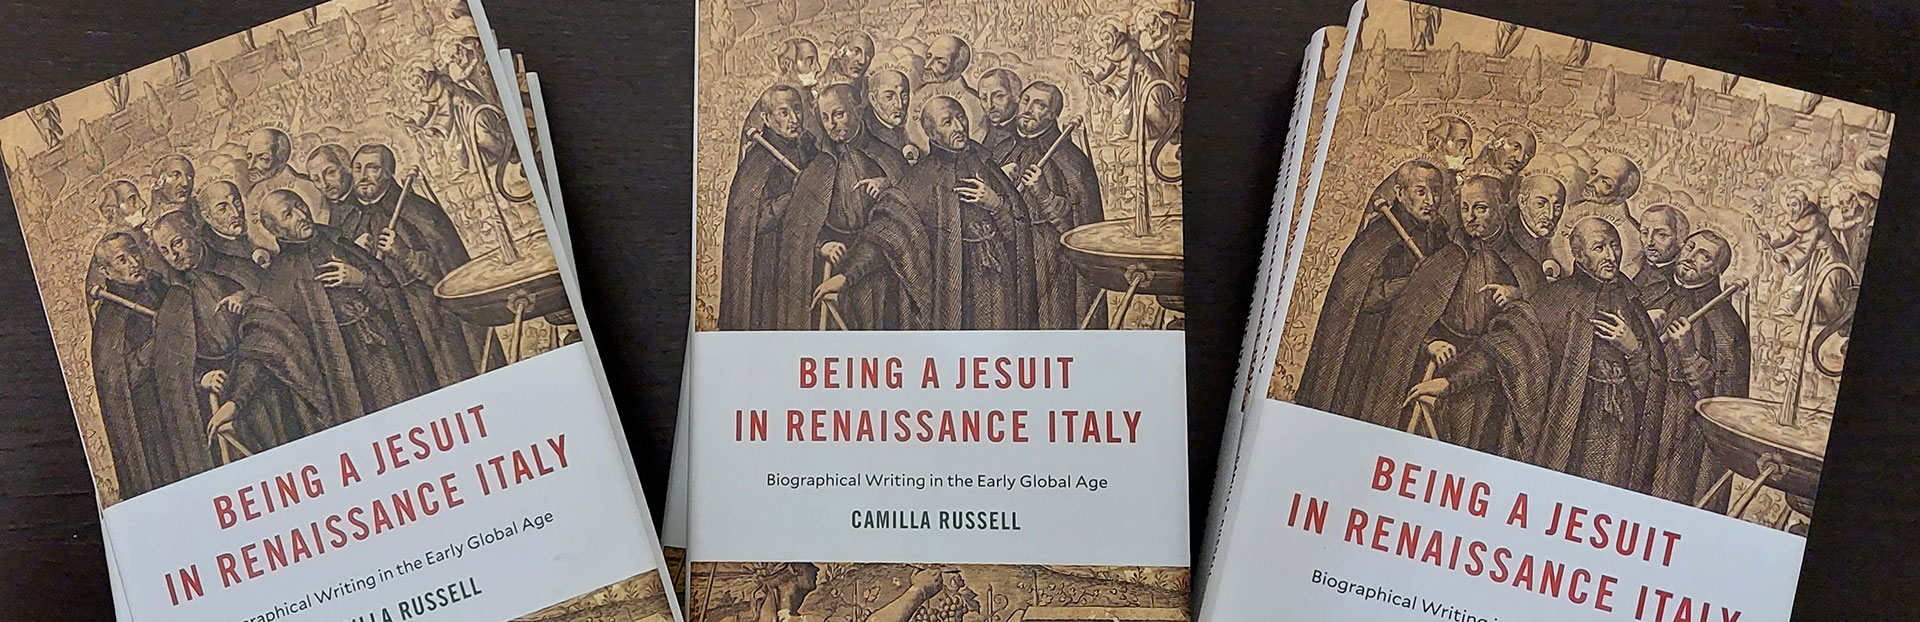 I gesuiti del XVI secolo e i gesuiti di oggi sono poi così diversi?